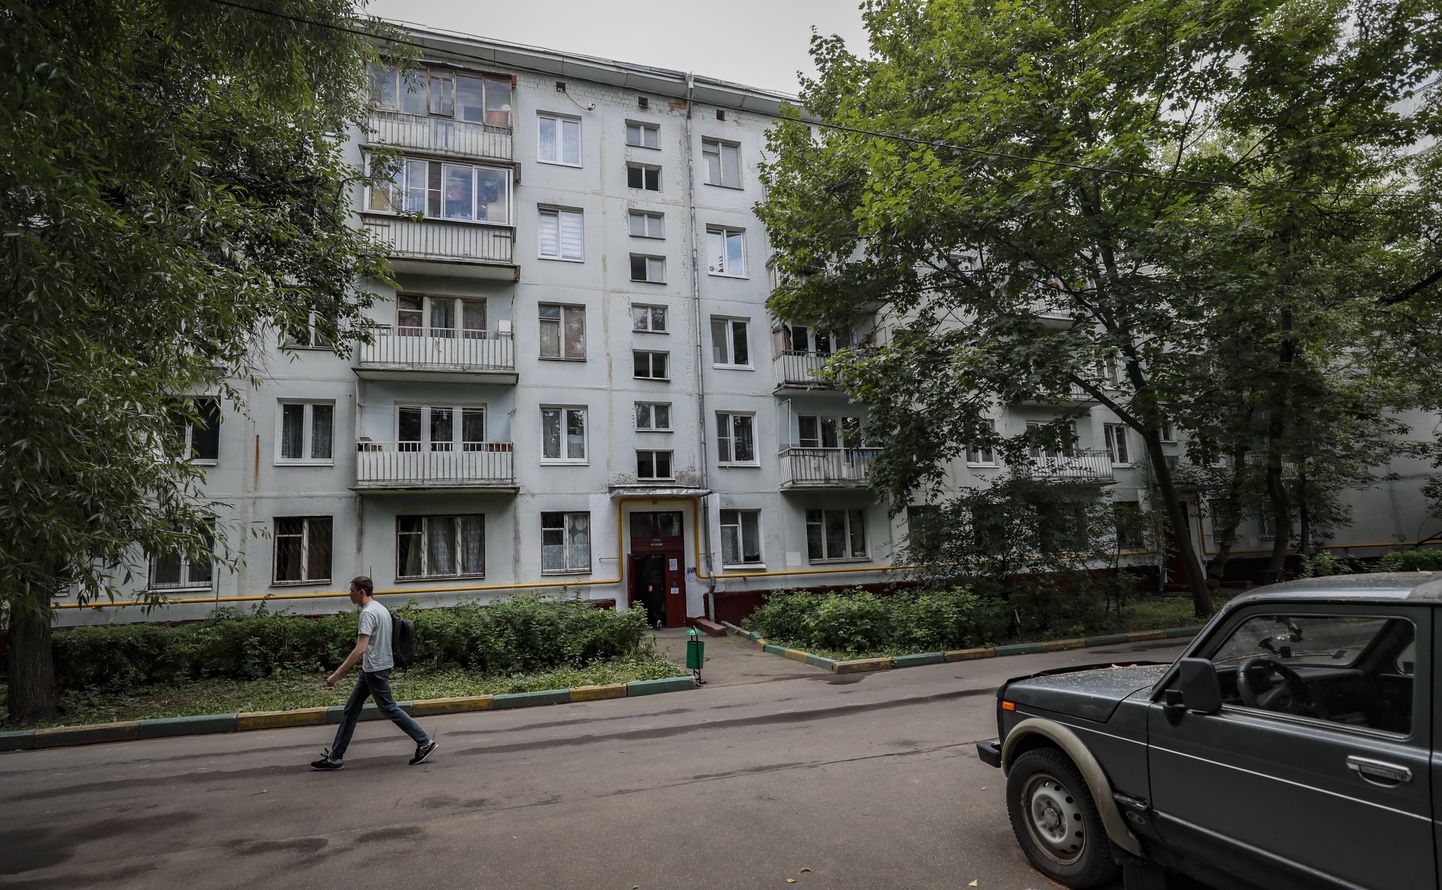 Nõukogude-aegne korrusmaja Moskvas. Maja läheb lammutamisele ja riikliku ehitusprogrammi toel peaks sinna kerkima uusehitis.